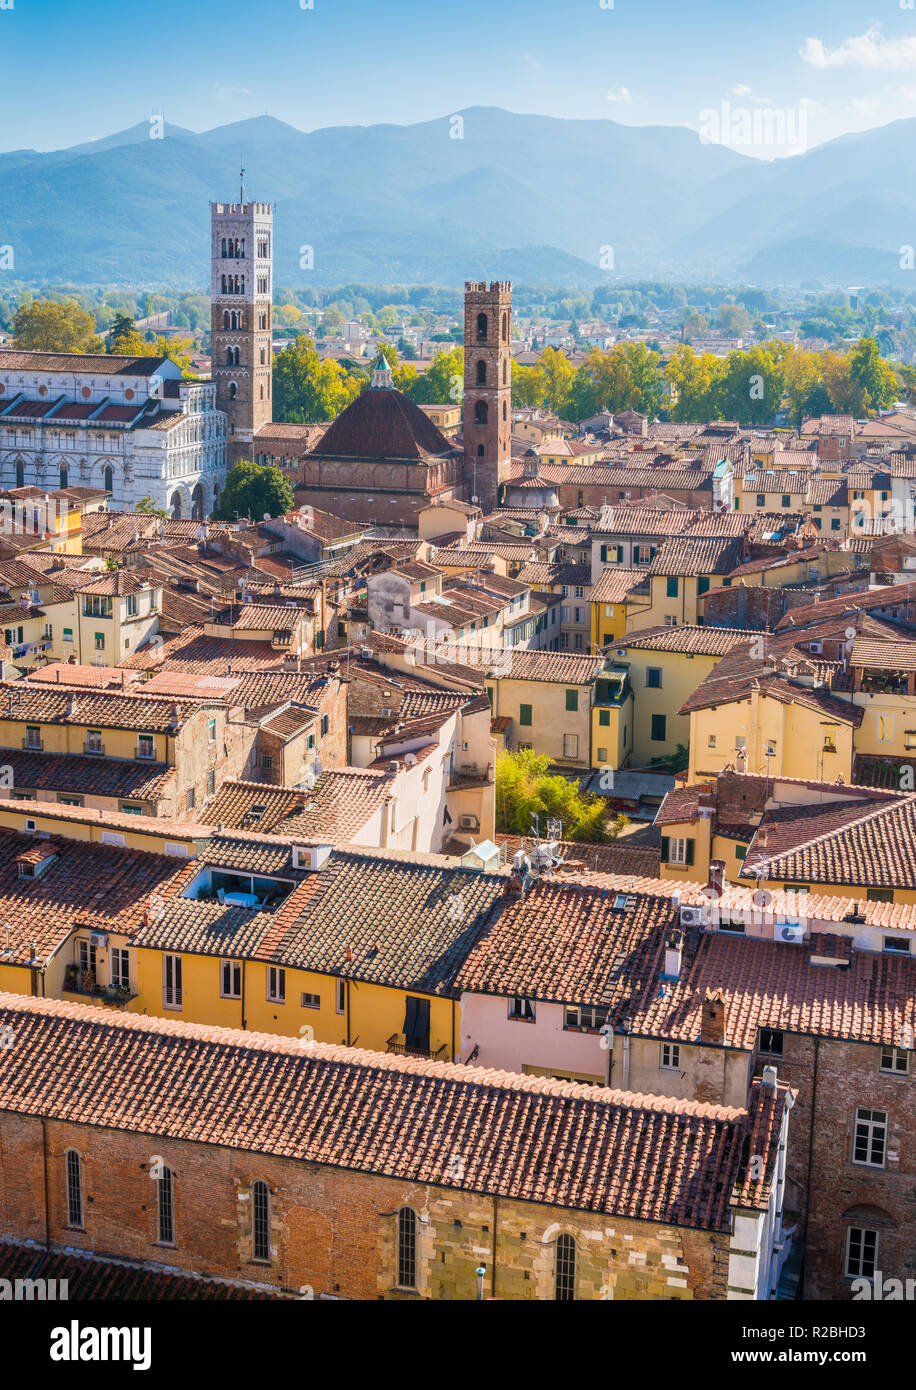 Vista panorámica en Lucca, con el Duomo de San Martino. Toscana, Italia. Foto de stock